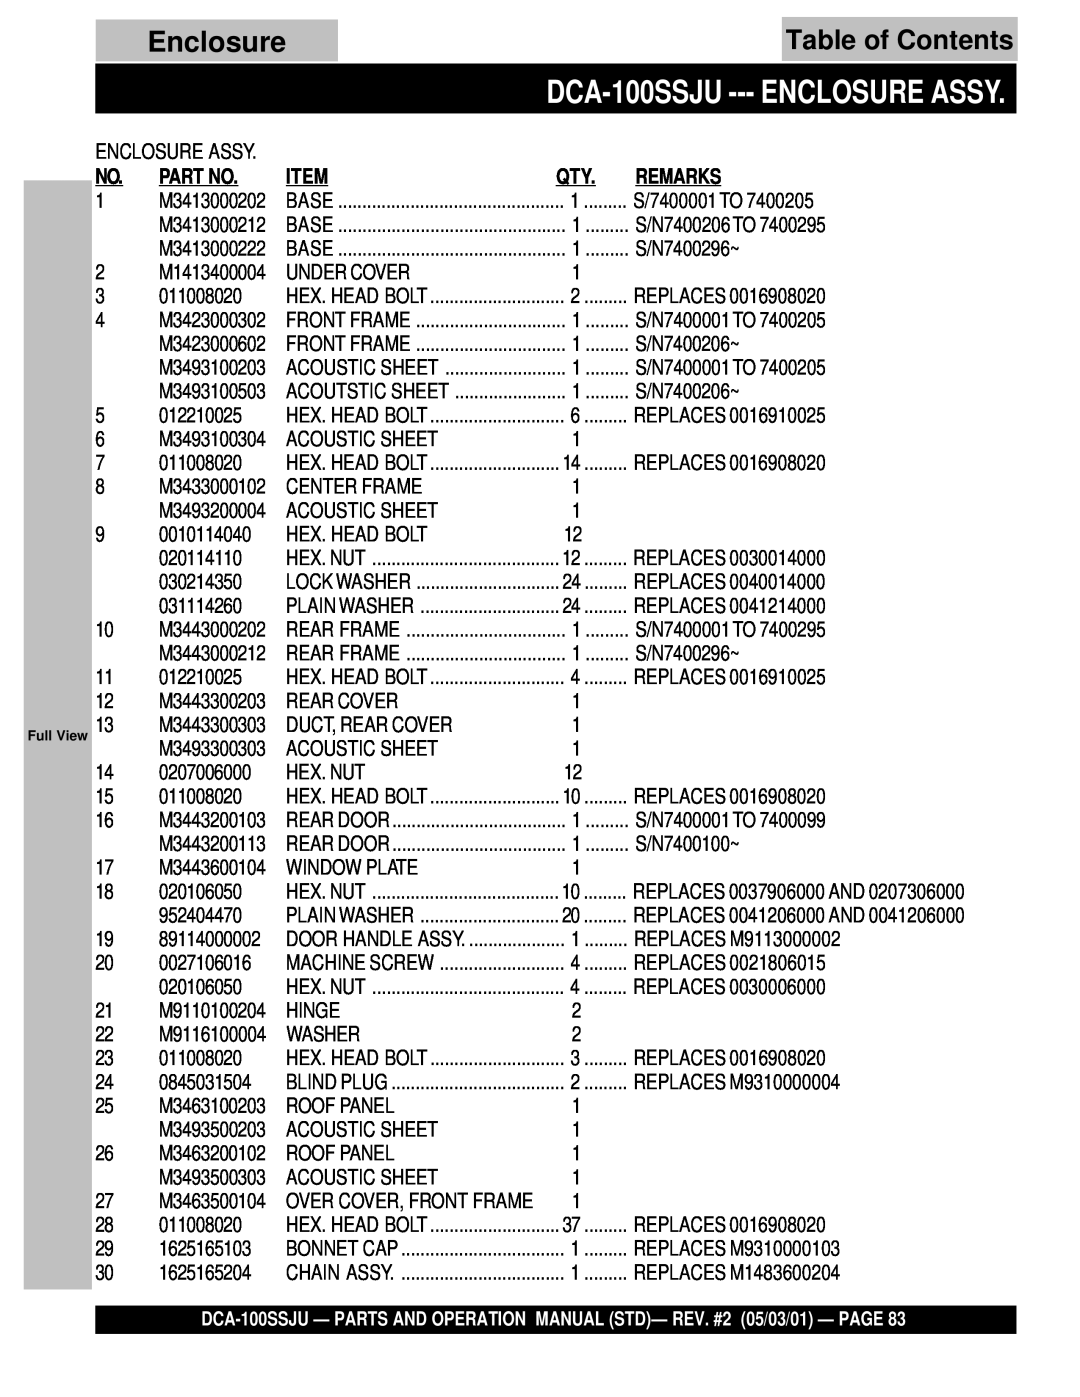 Multiquip DCA-100SSJU operation manual Enclosure Assy, Table of Contents 